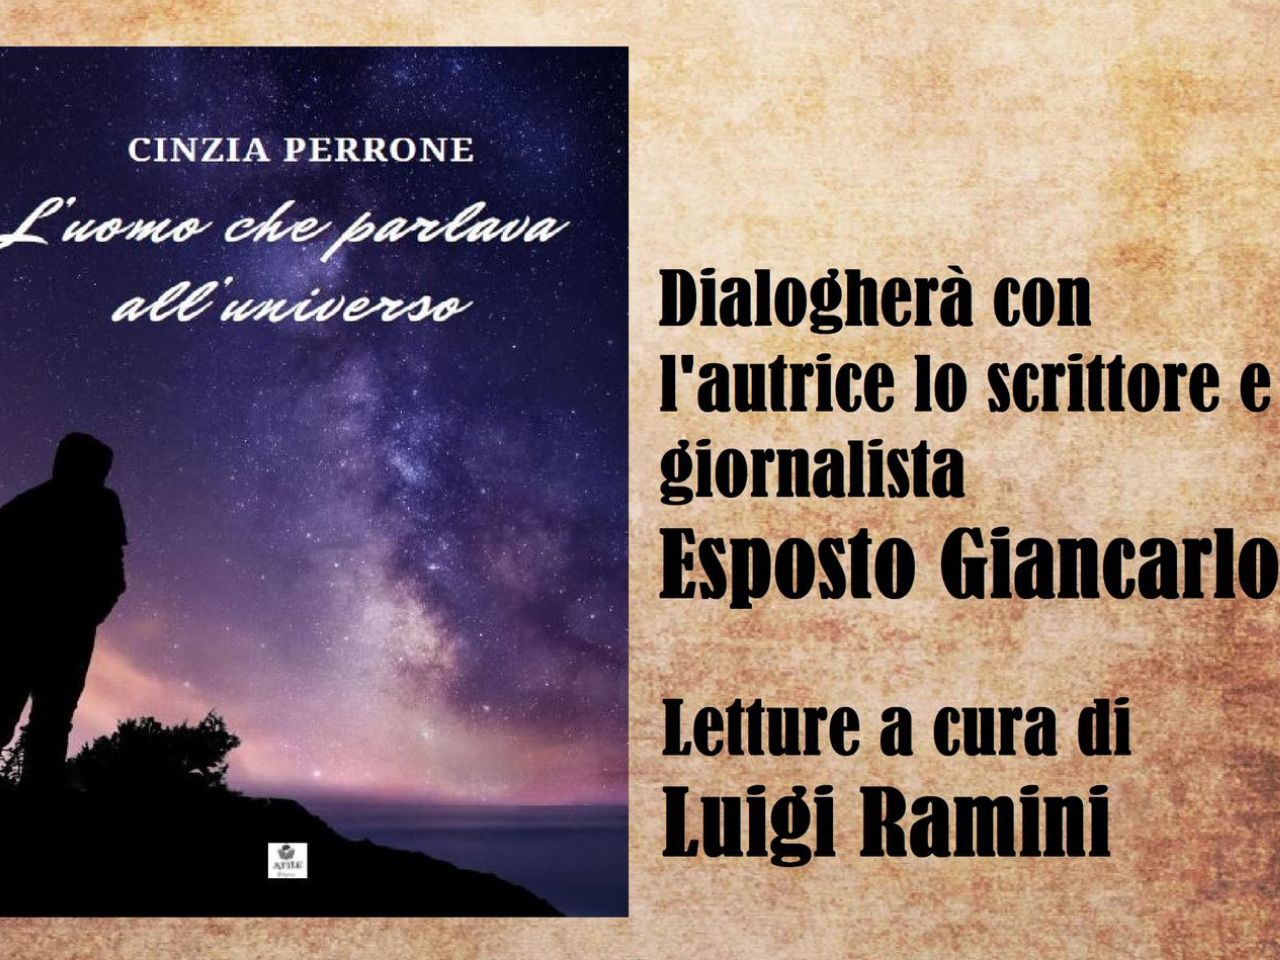 “L’uomo che parlava all’universo”, il nuovo romanzo dell’autrice Cinzia Perrone